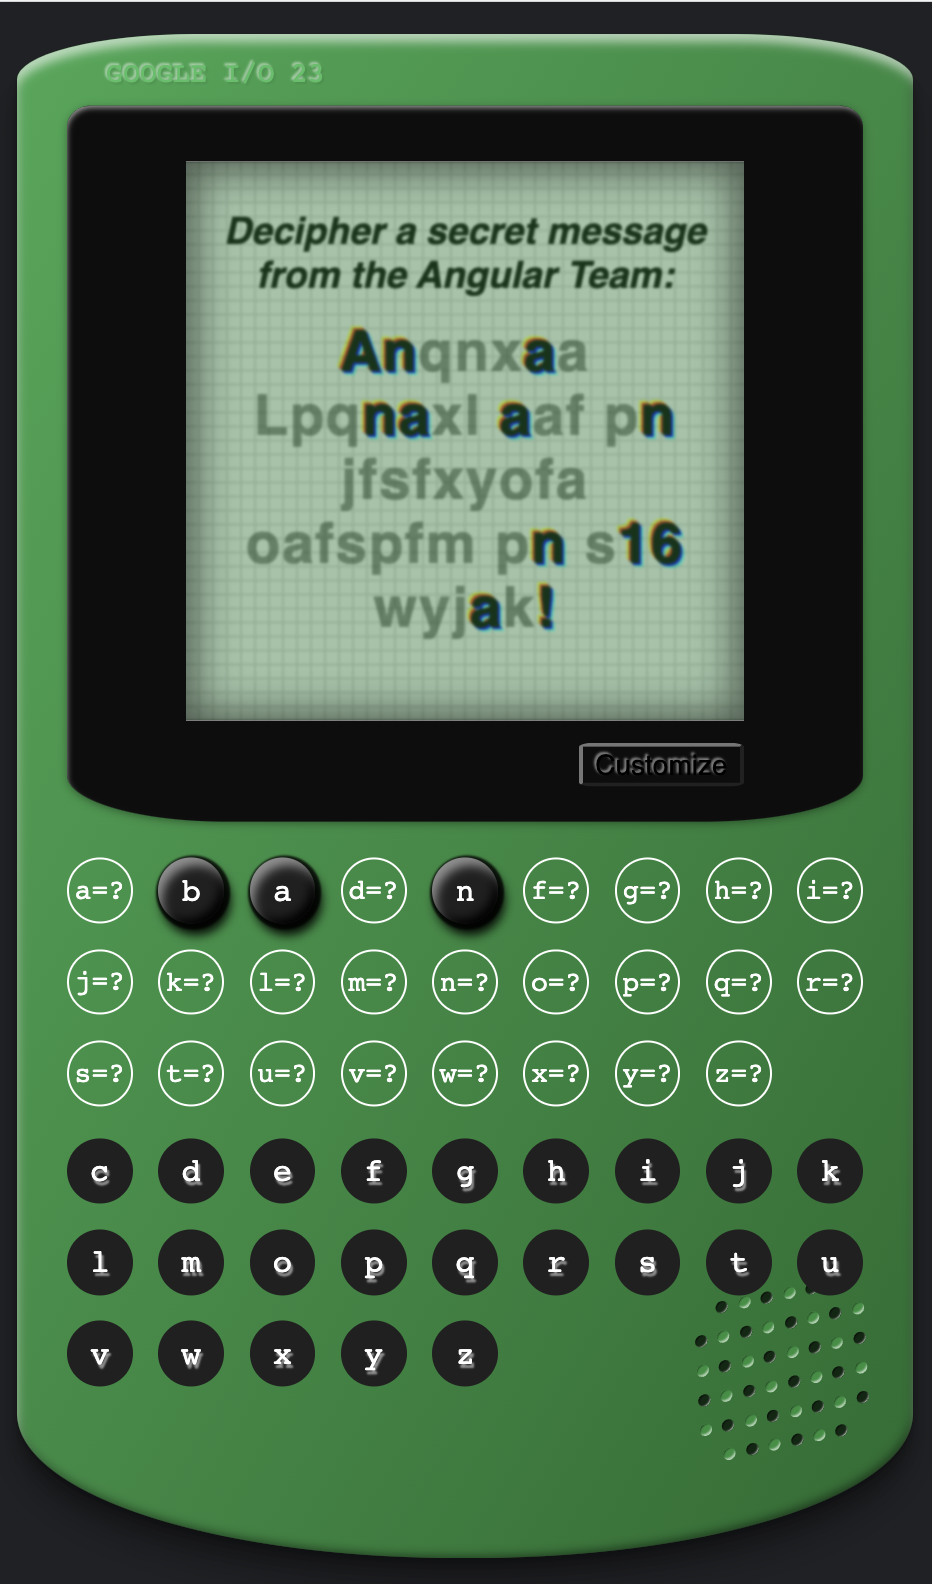 لعبة Angular Cypher بنمط وحدة تحكم ألعاب كلاسيكية خضراء، وتظهر فيها رسالة مخفية على شاشة &quot;Anqnxaa Lpcnaxl aaf pn jfafxyofa aofapfm pn a16 wyjak!&quot;